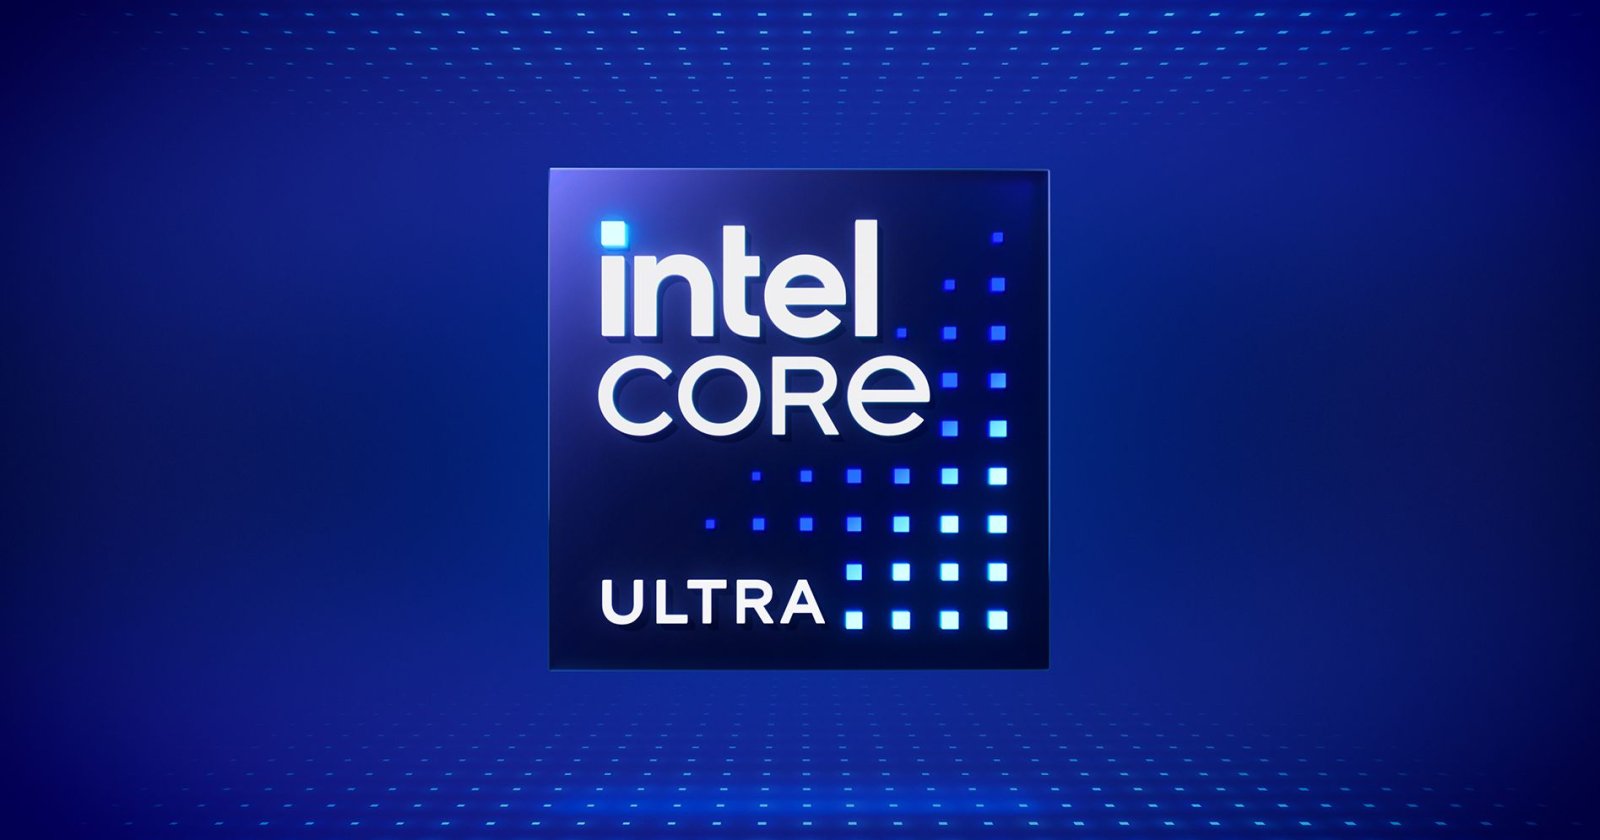 3 สิ่งที่น่าสนใจใน Intel Core Ultra ทั้งชิป AI ในตัว, iGPU แรงขึ้น และสถาปัตยกรรม Intel 4 ผลิต 7 nm